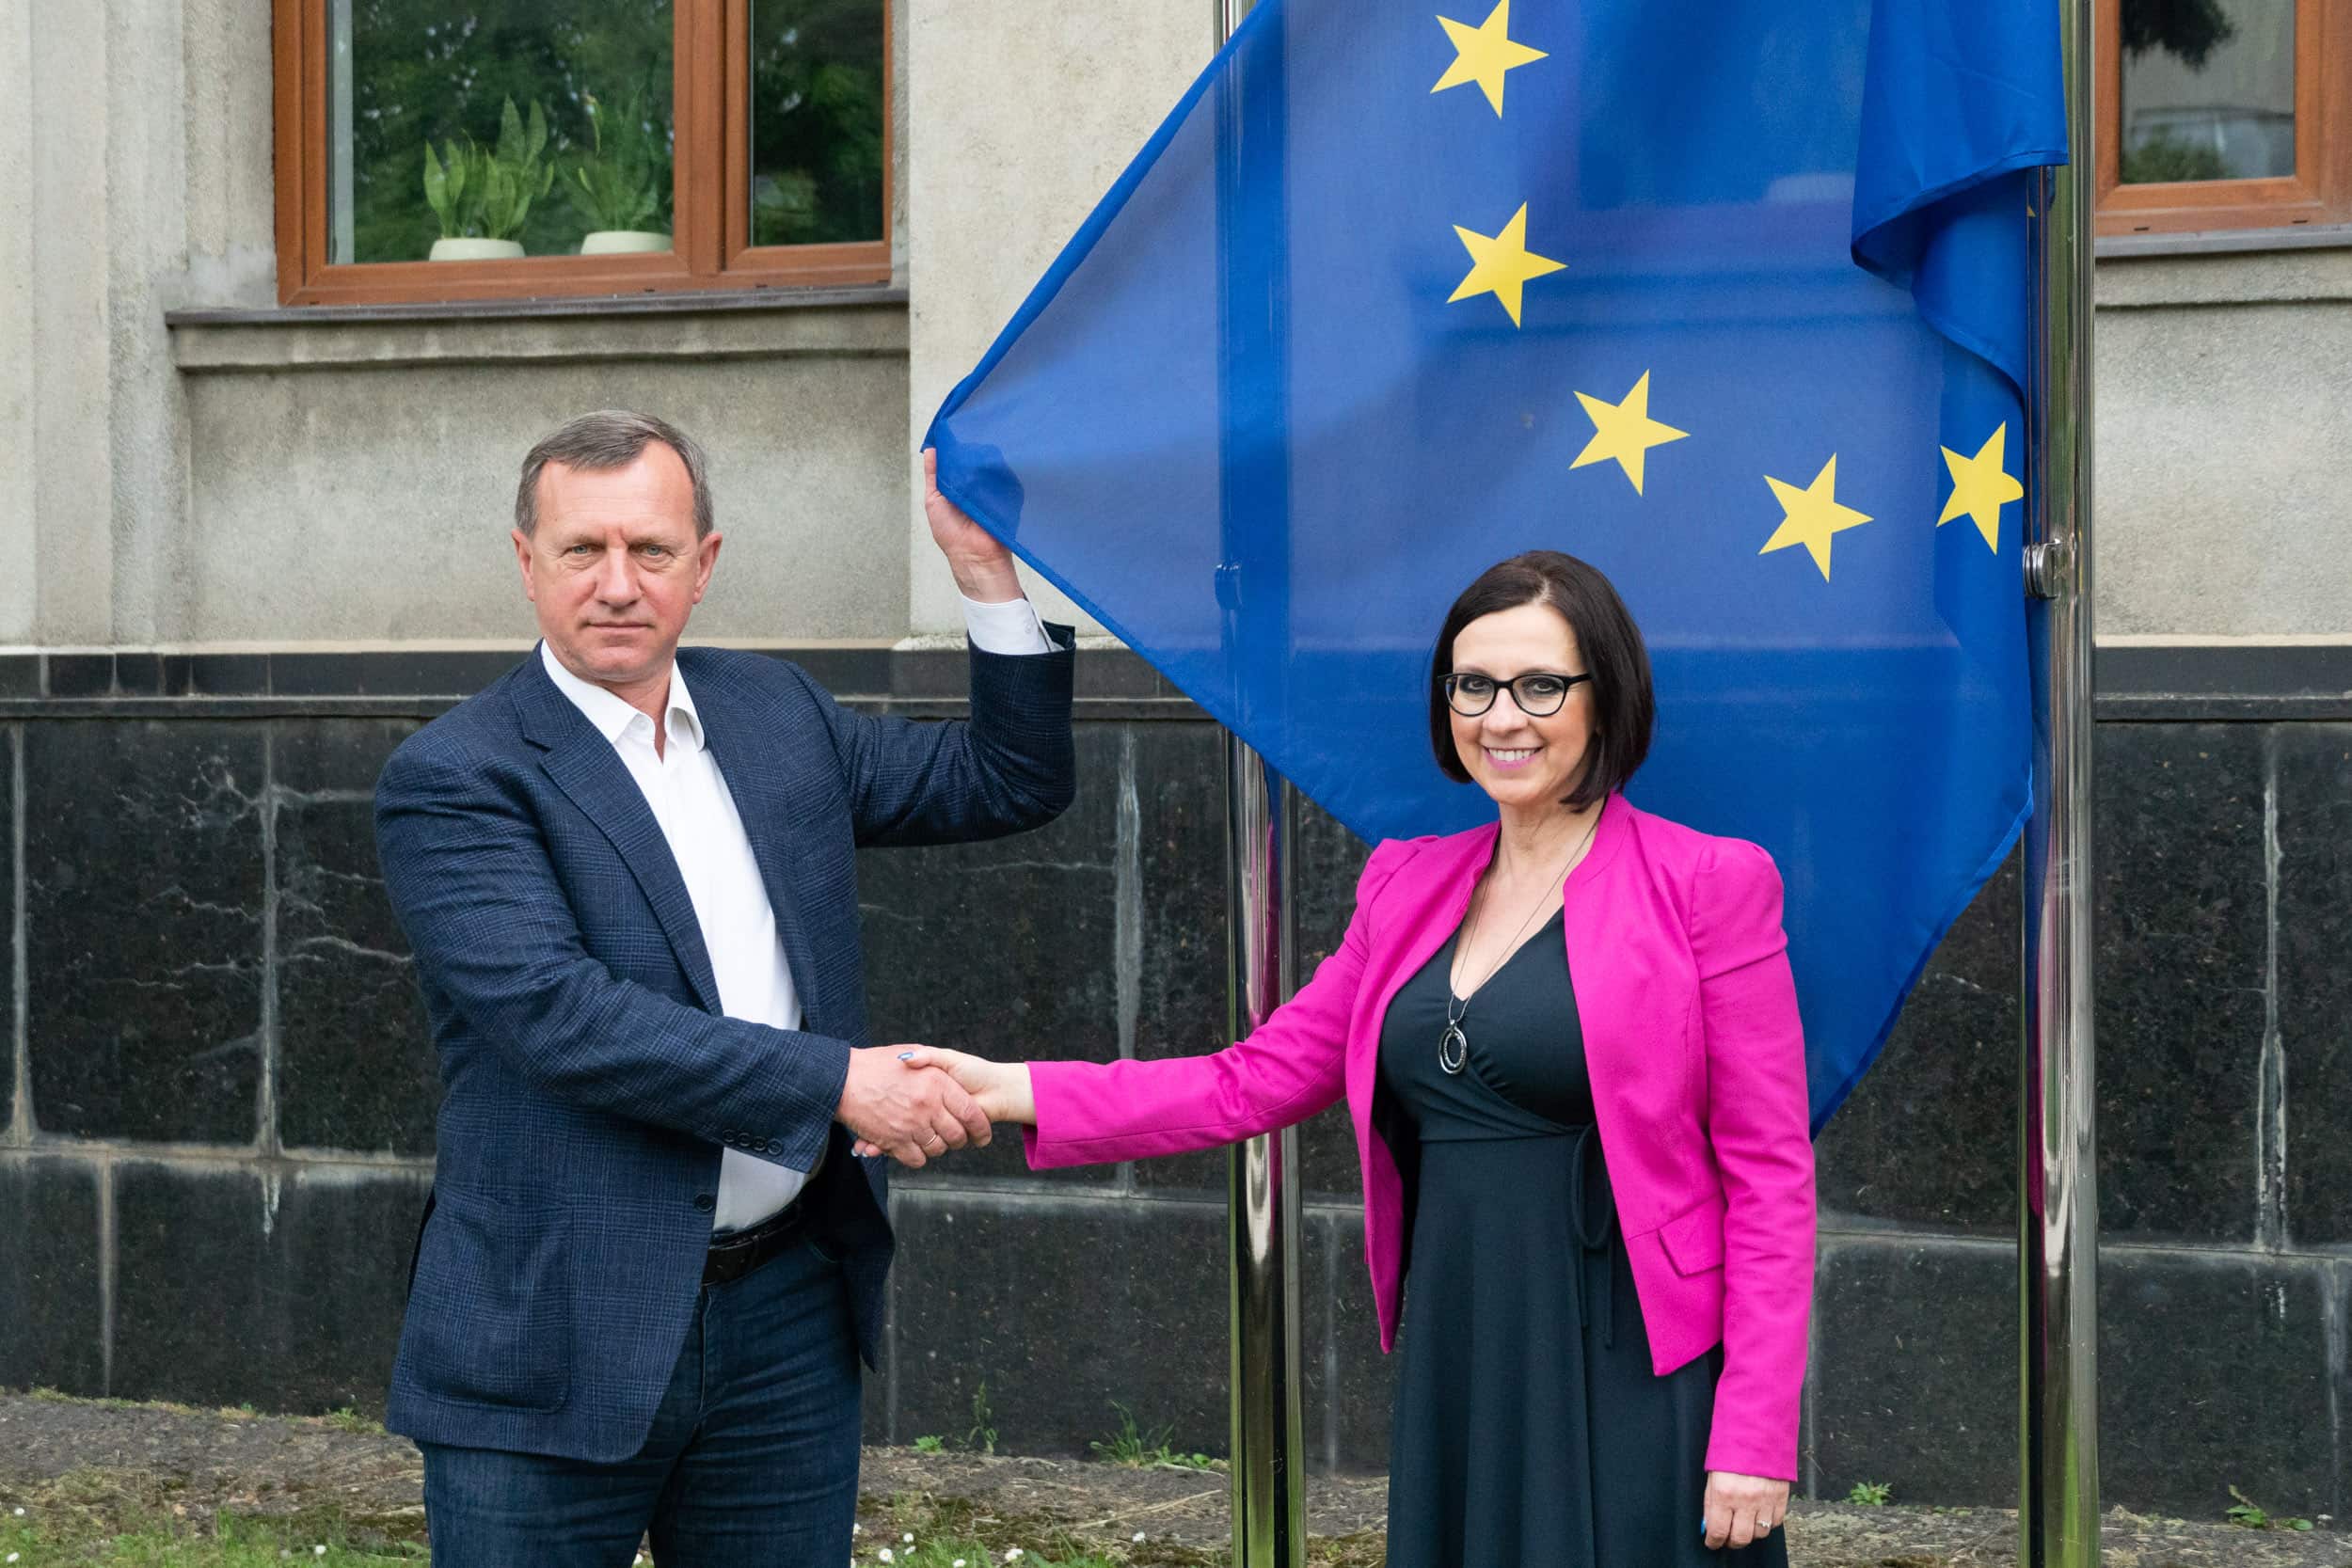 Прапор ЄС підняли біля будівлі Ужгородської міськради до Дня Європи, який відзначаємо сьогодні